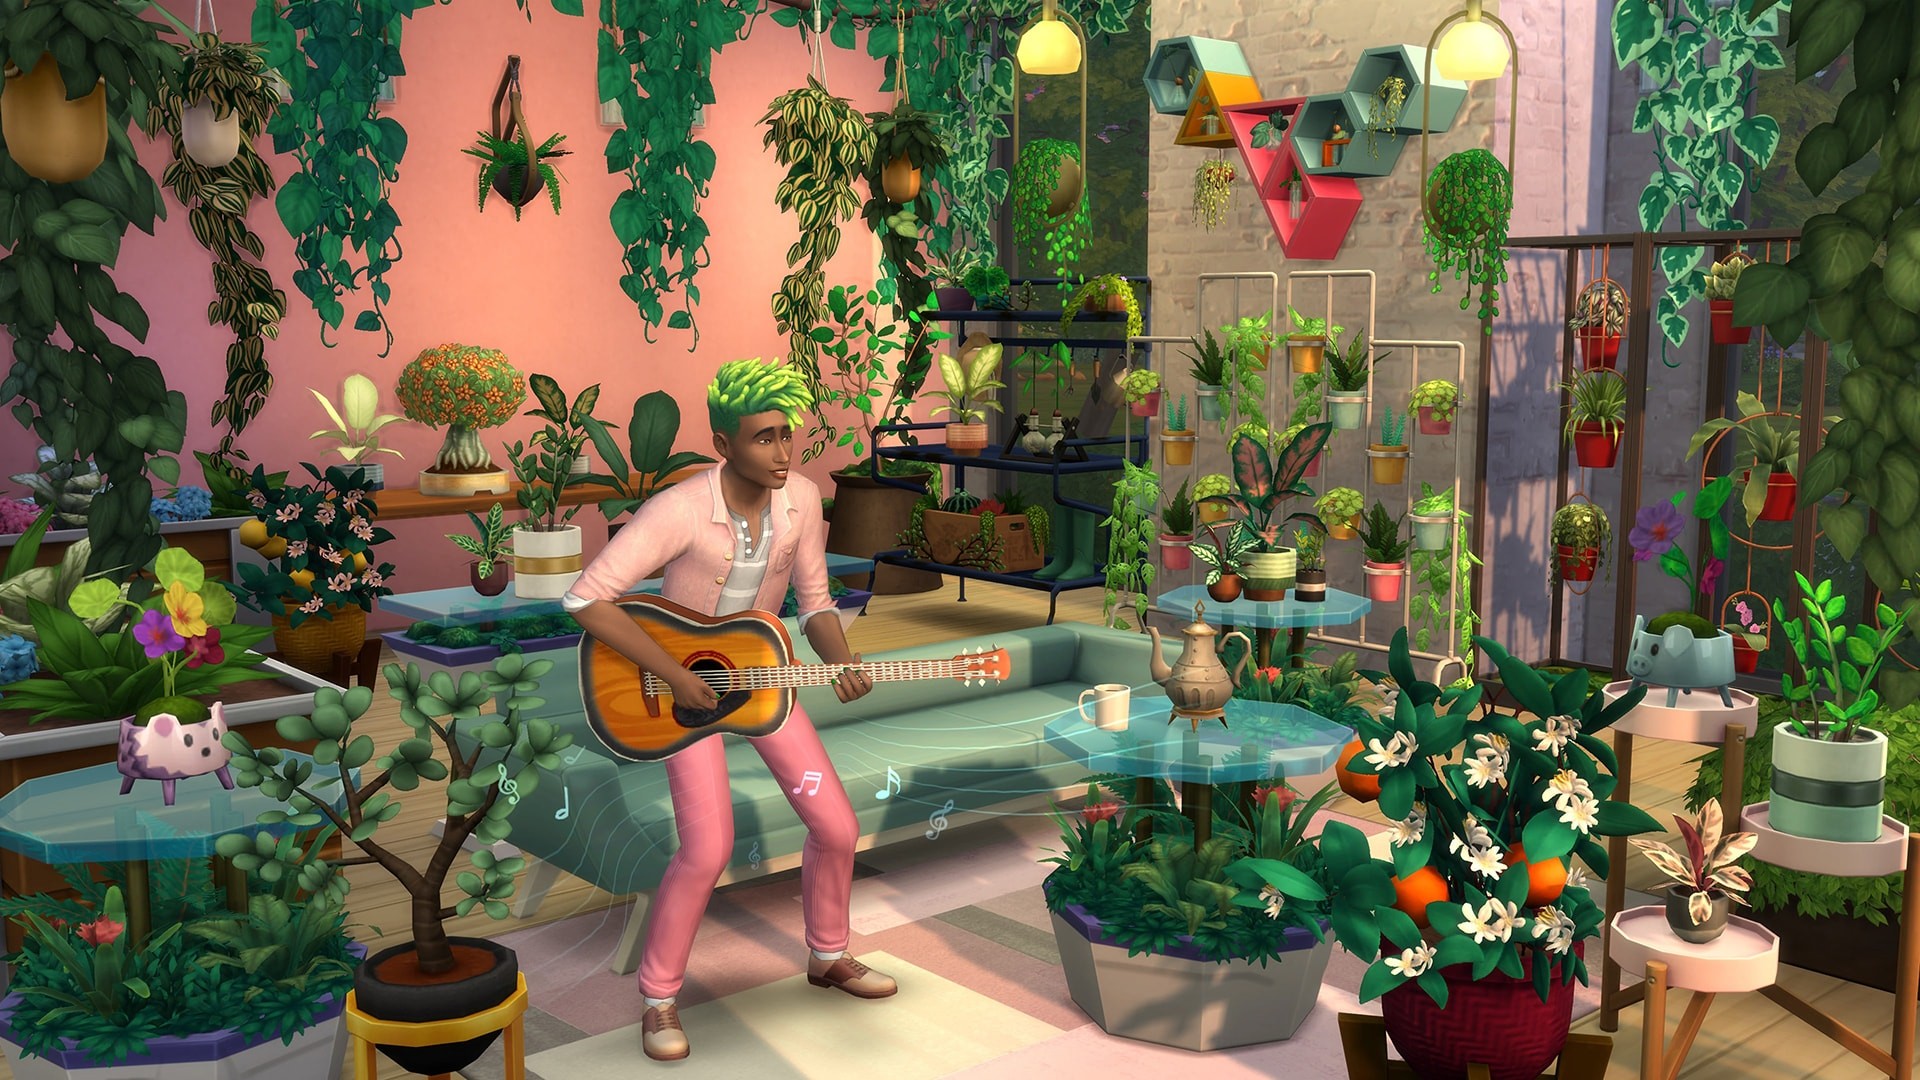 The Sims 4 - Blooming Rooms Kit DLC Origin CD Key 7.82$